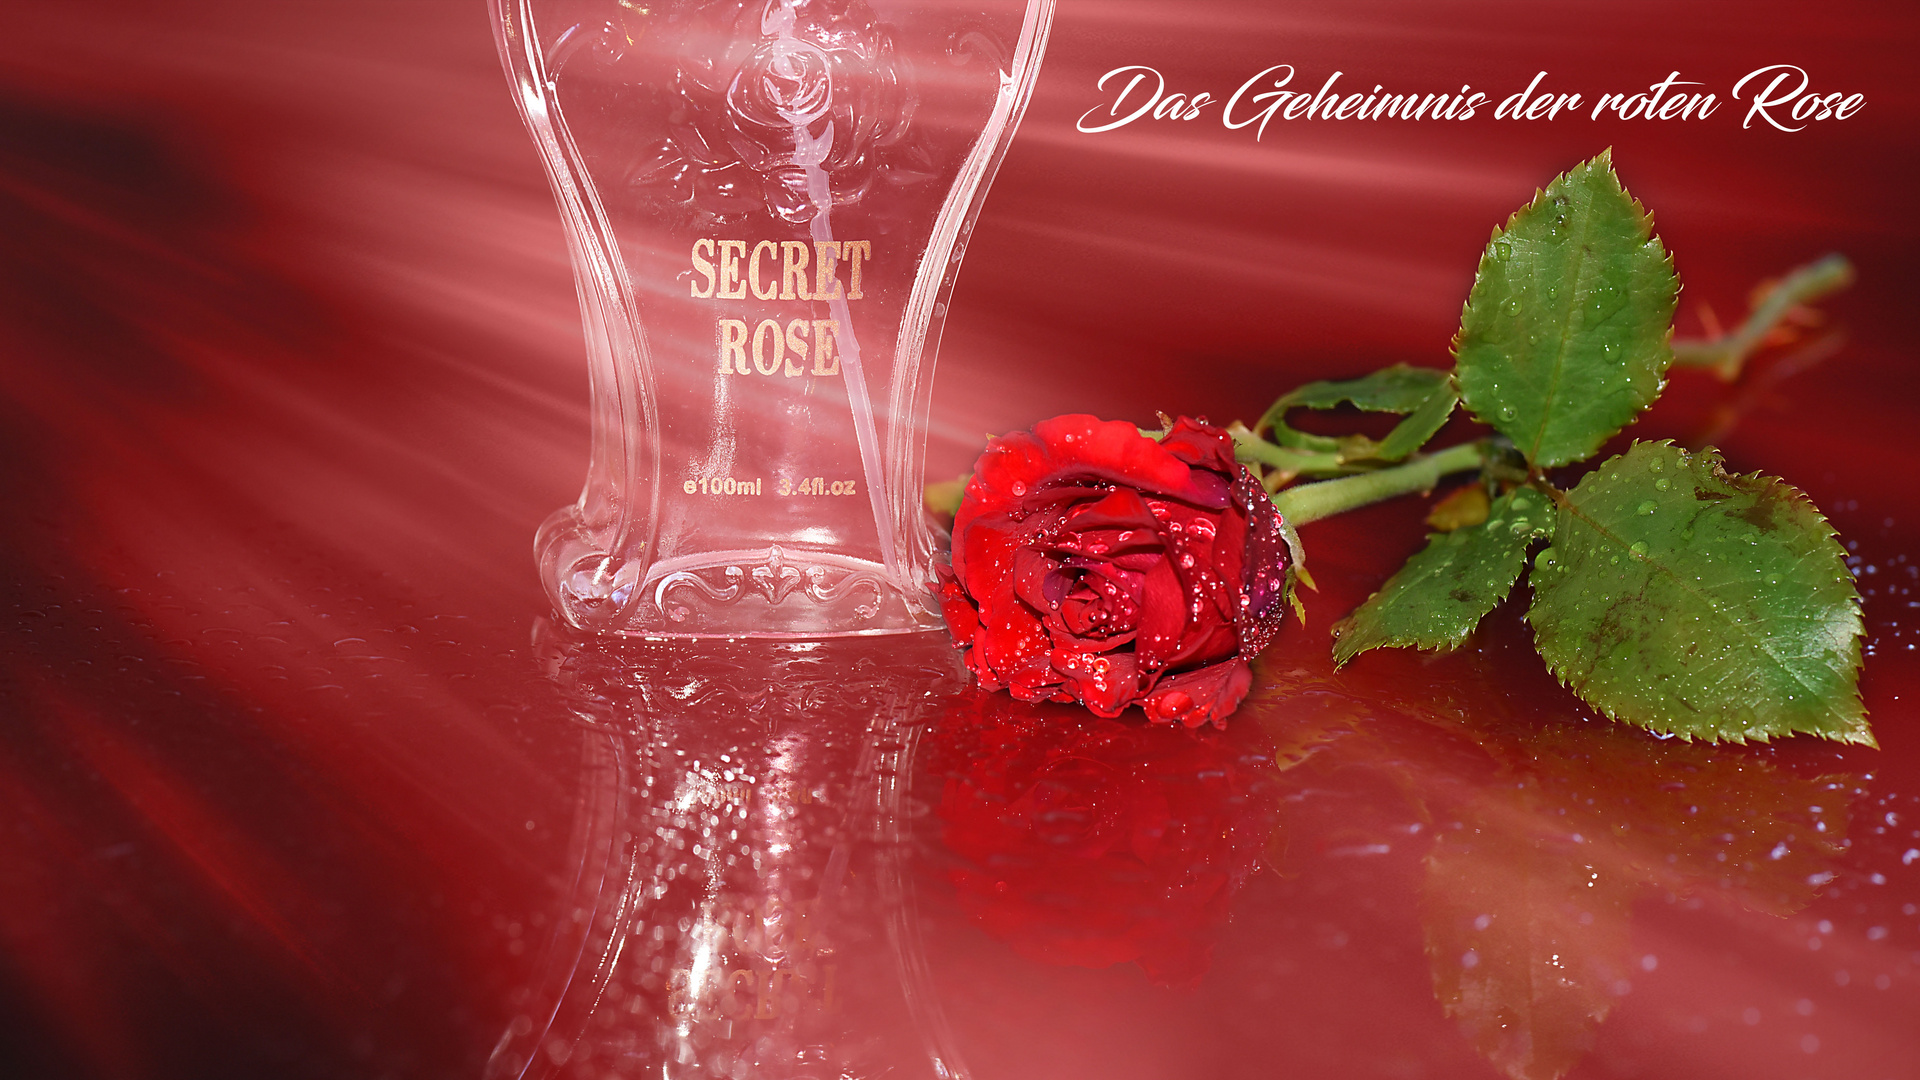 Das Geheimnis der roten Rose...